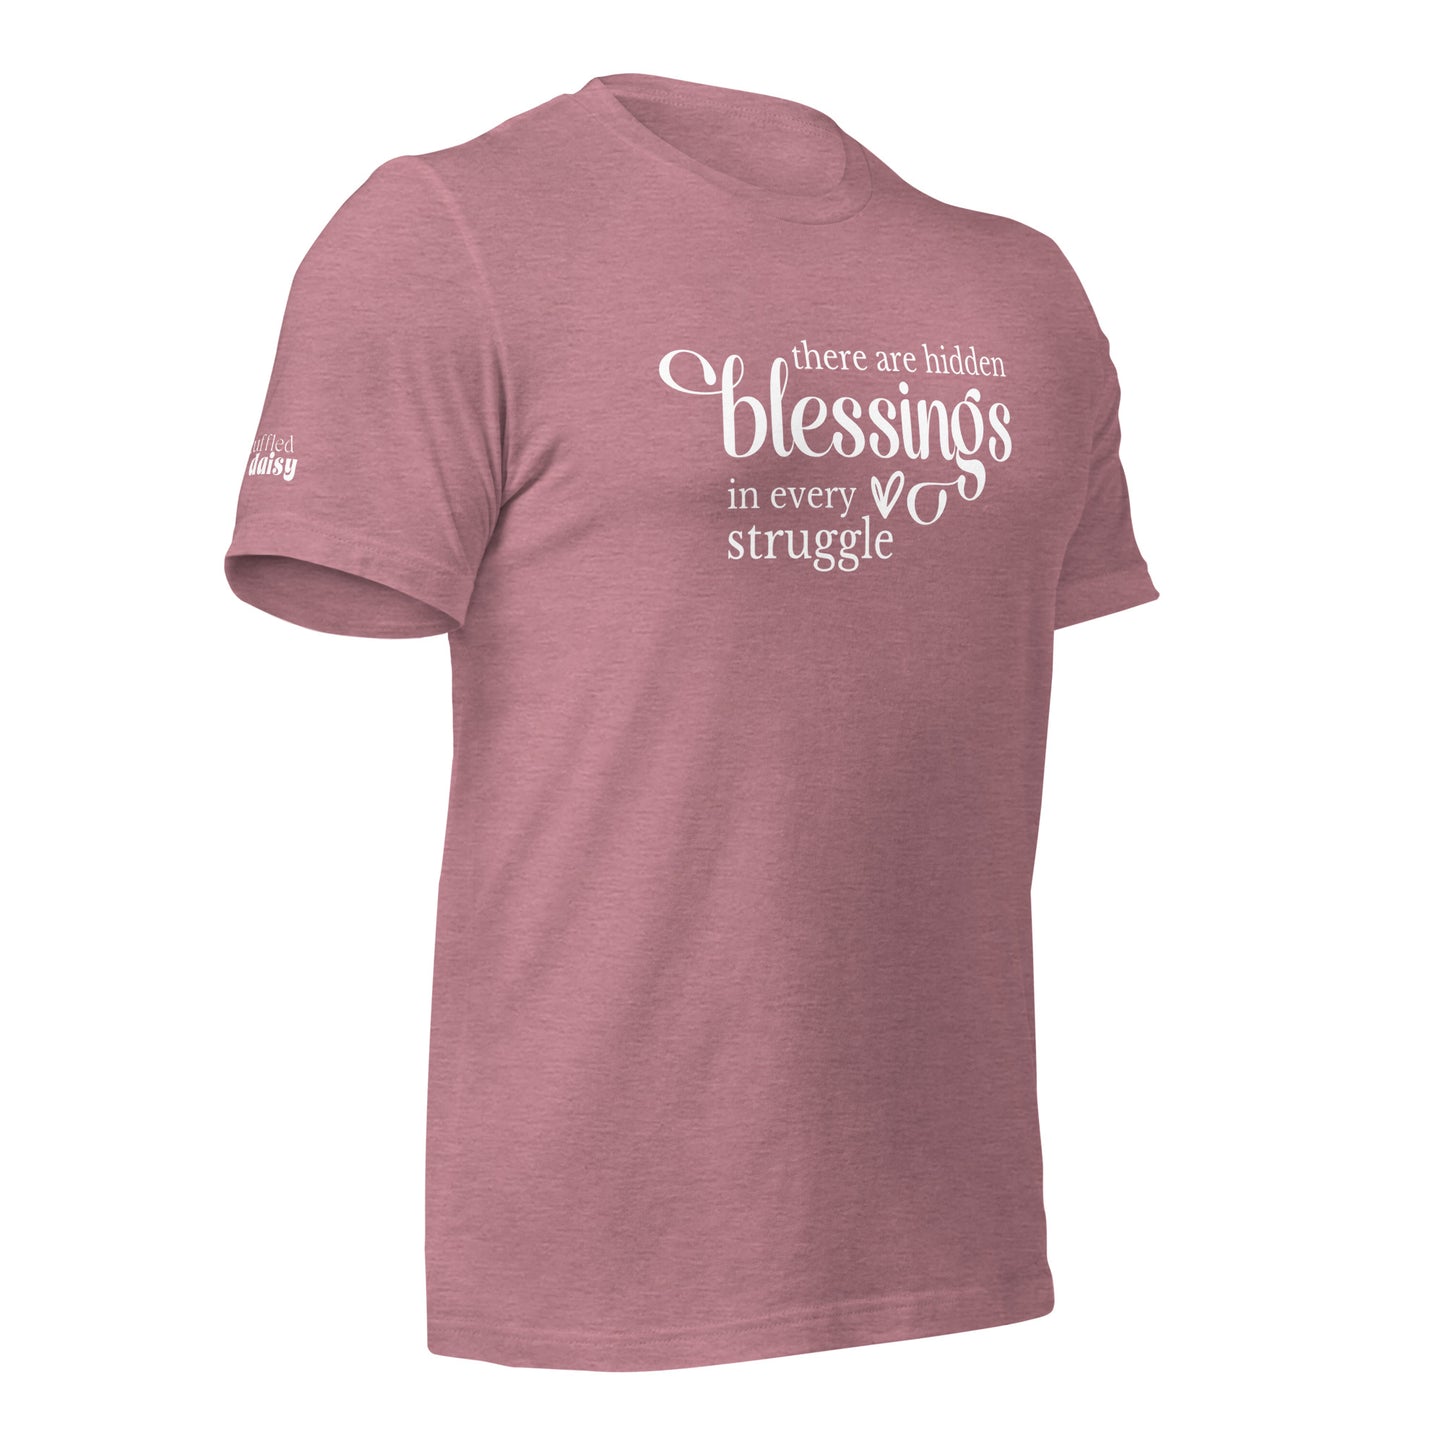 Hidden Blessings RD Branded Unisex t-shirt